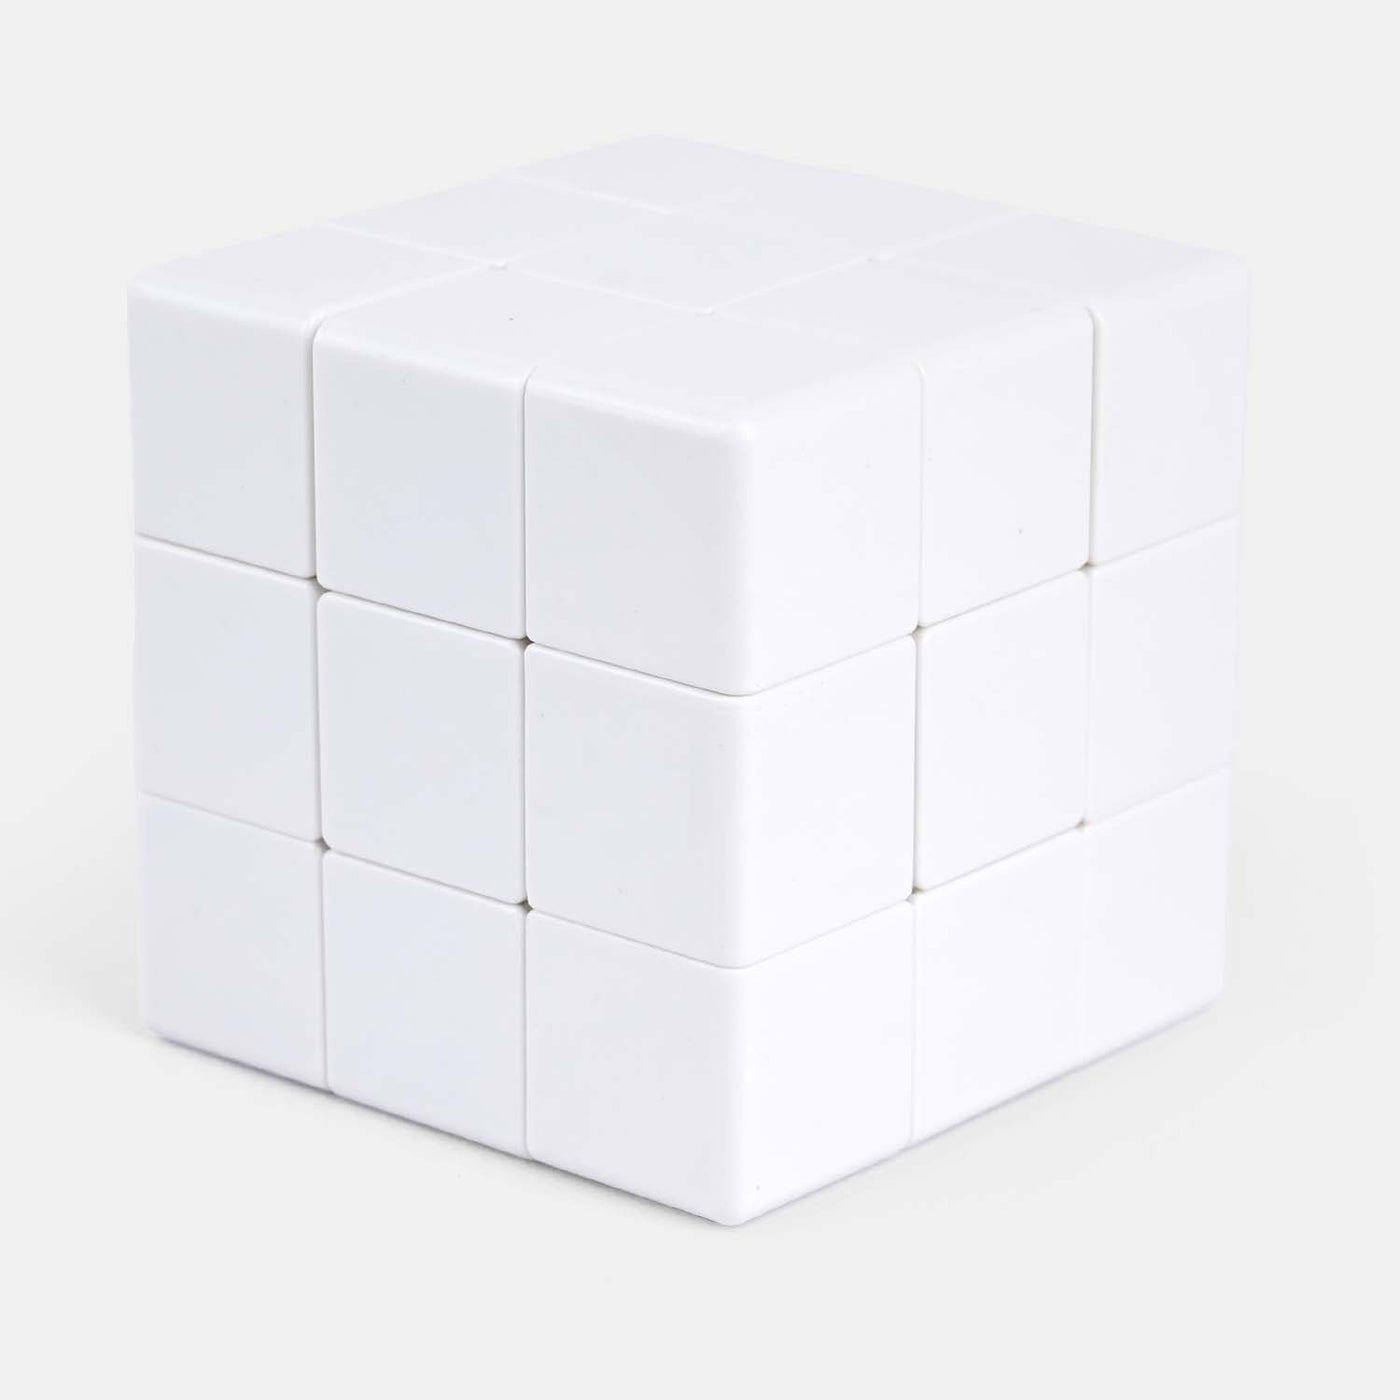 Cube Paint Set